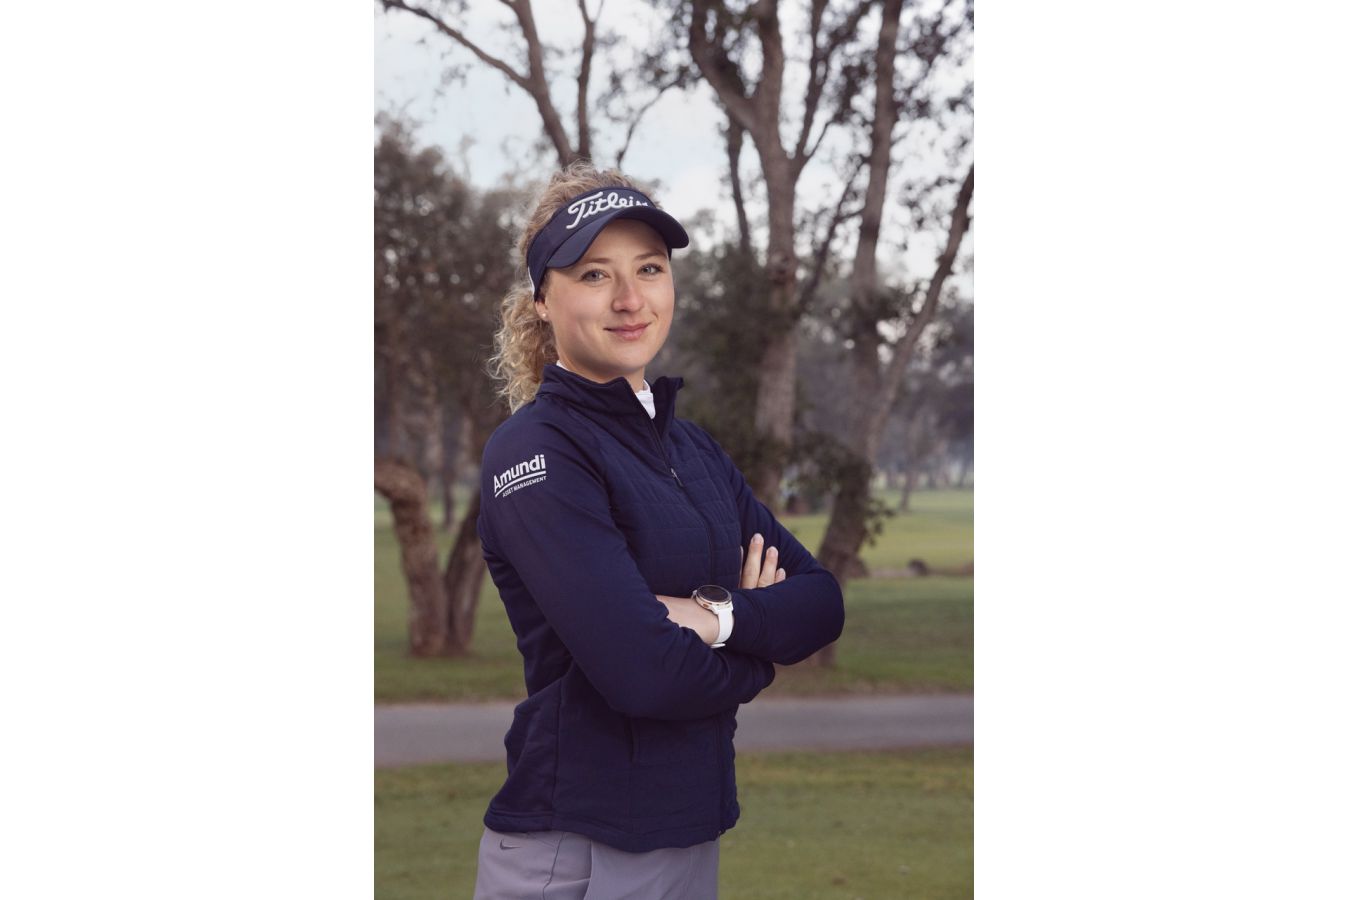 Nejlepší česká profesionální hráčka Sára Kousková se stala součástí prestižního evropského ženského týmu Amundi Golf